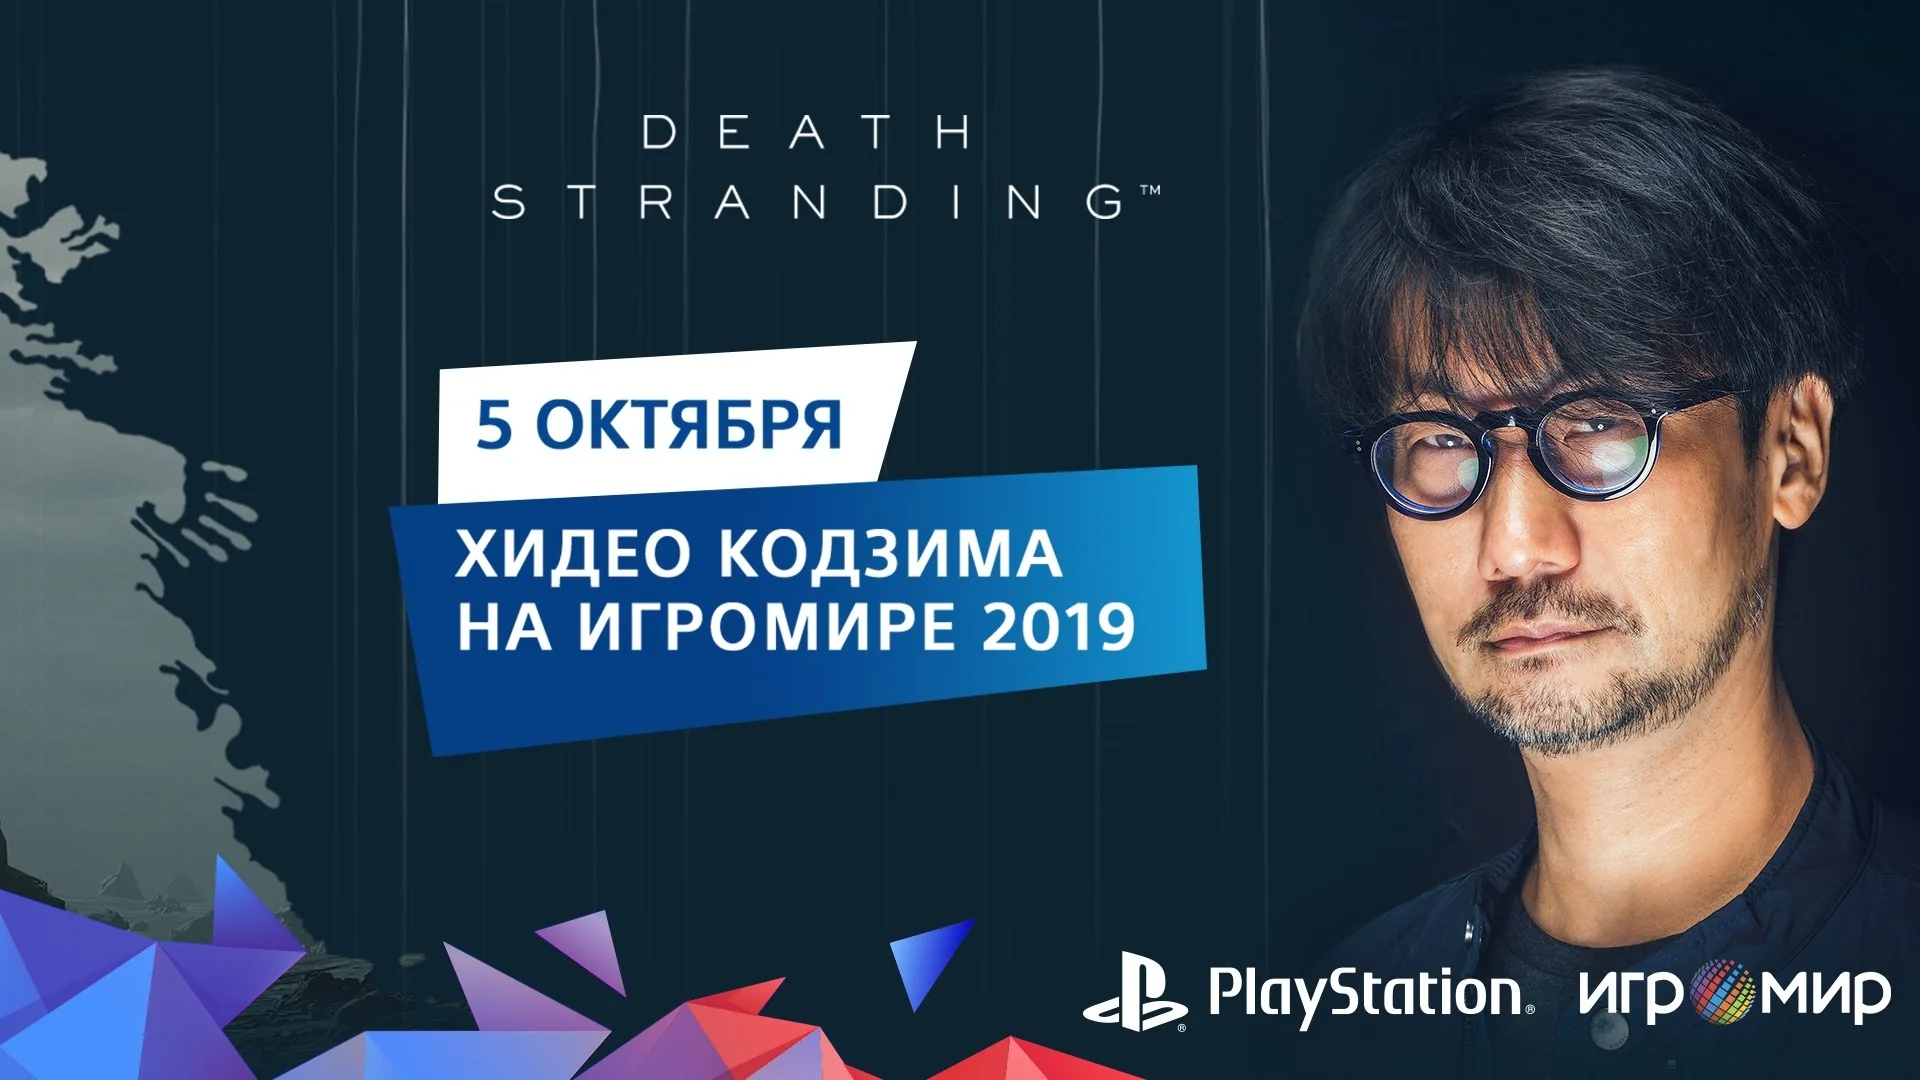 Хидео Кодзима приедет на ИгроМир 2019, чтобы представить Death Stranding - фото 1